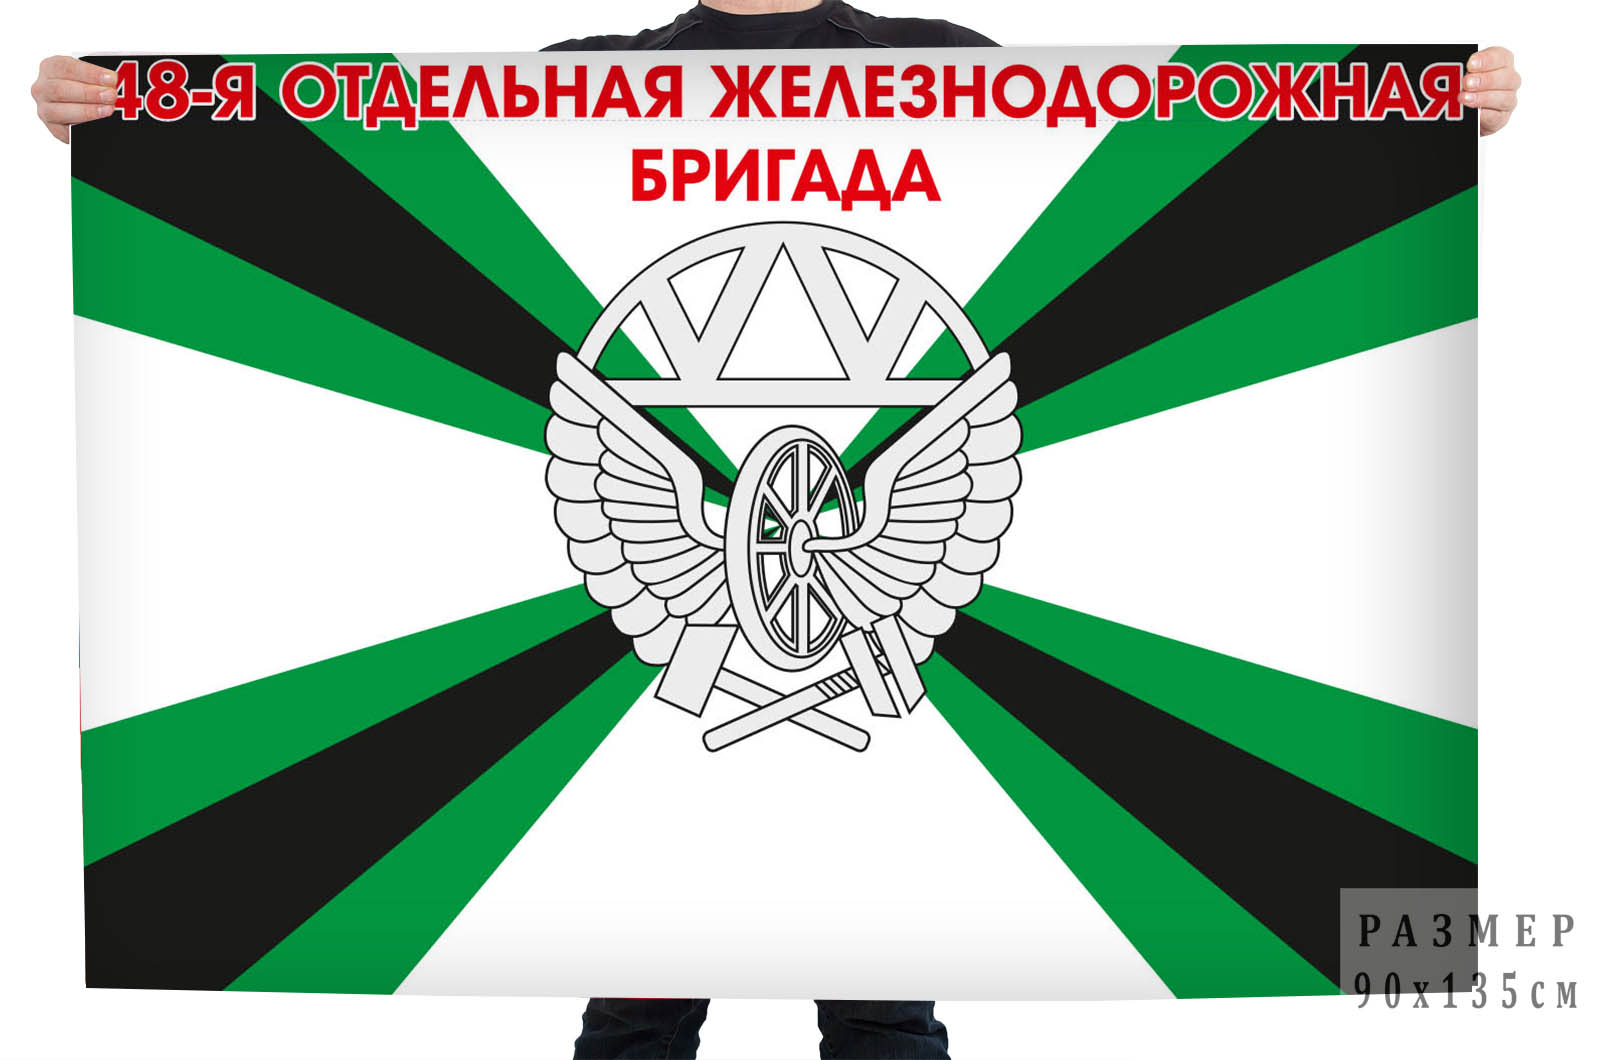 Флаг "48 отдельная железнодорожная бригада"